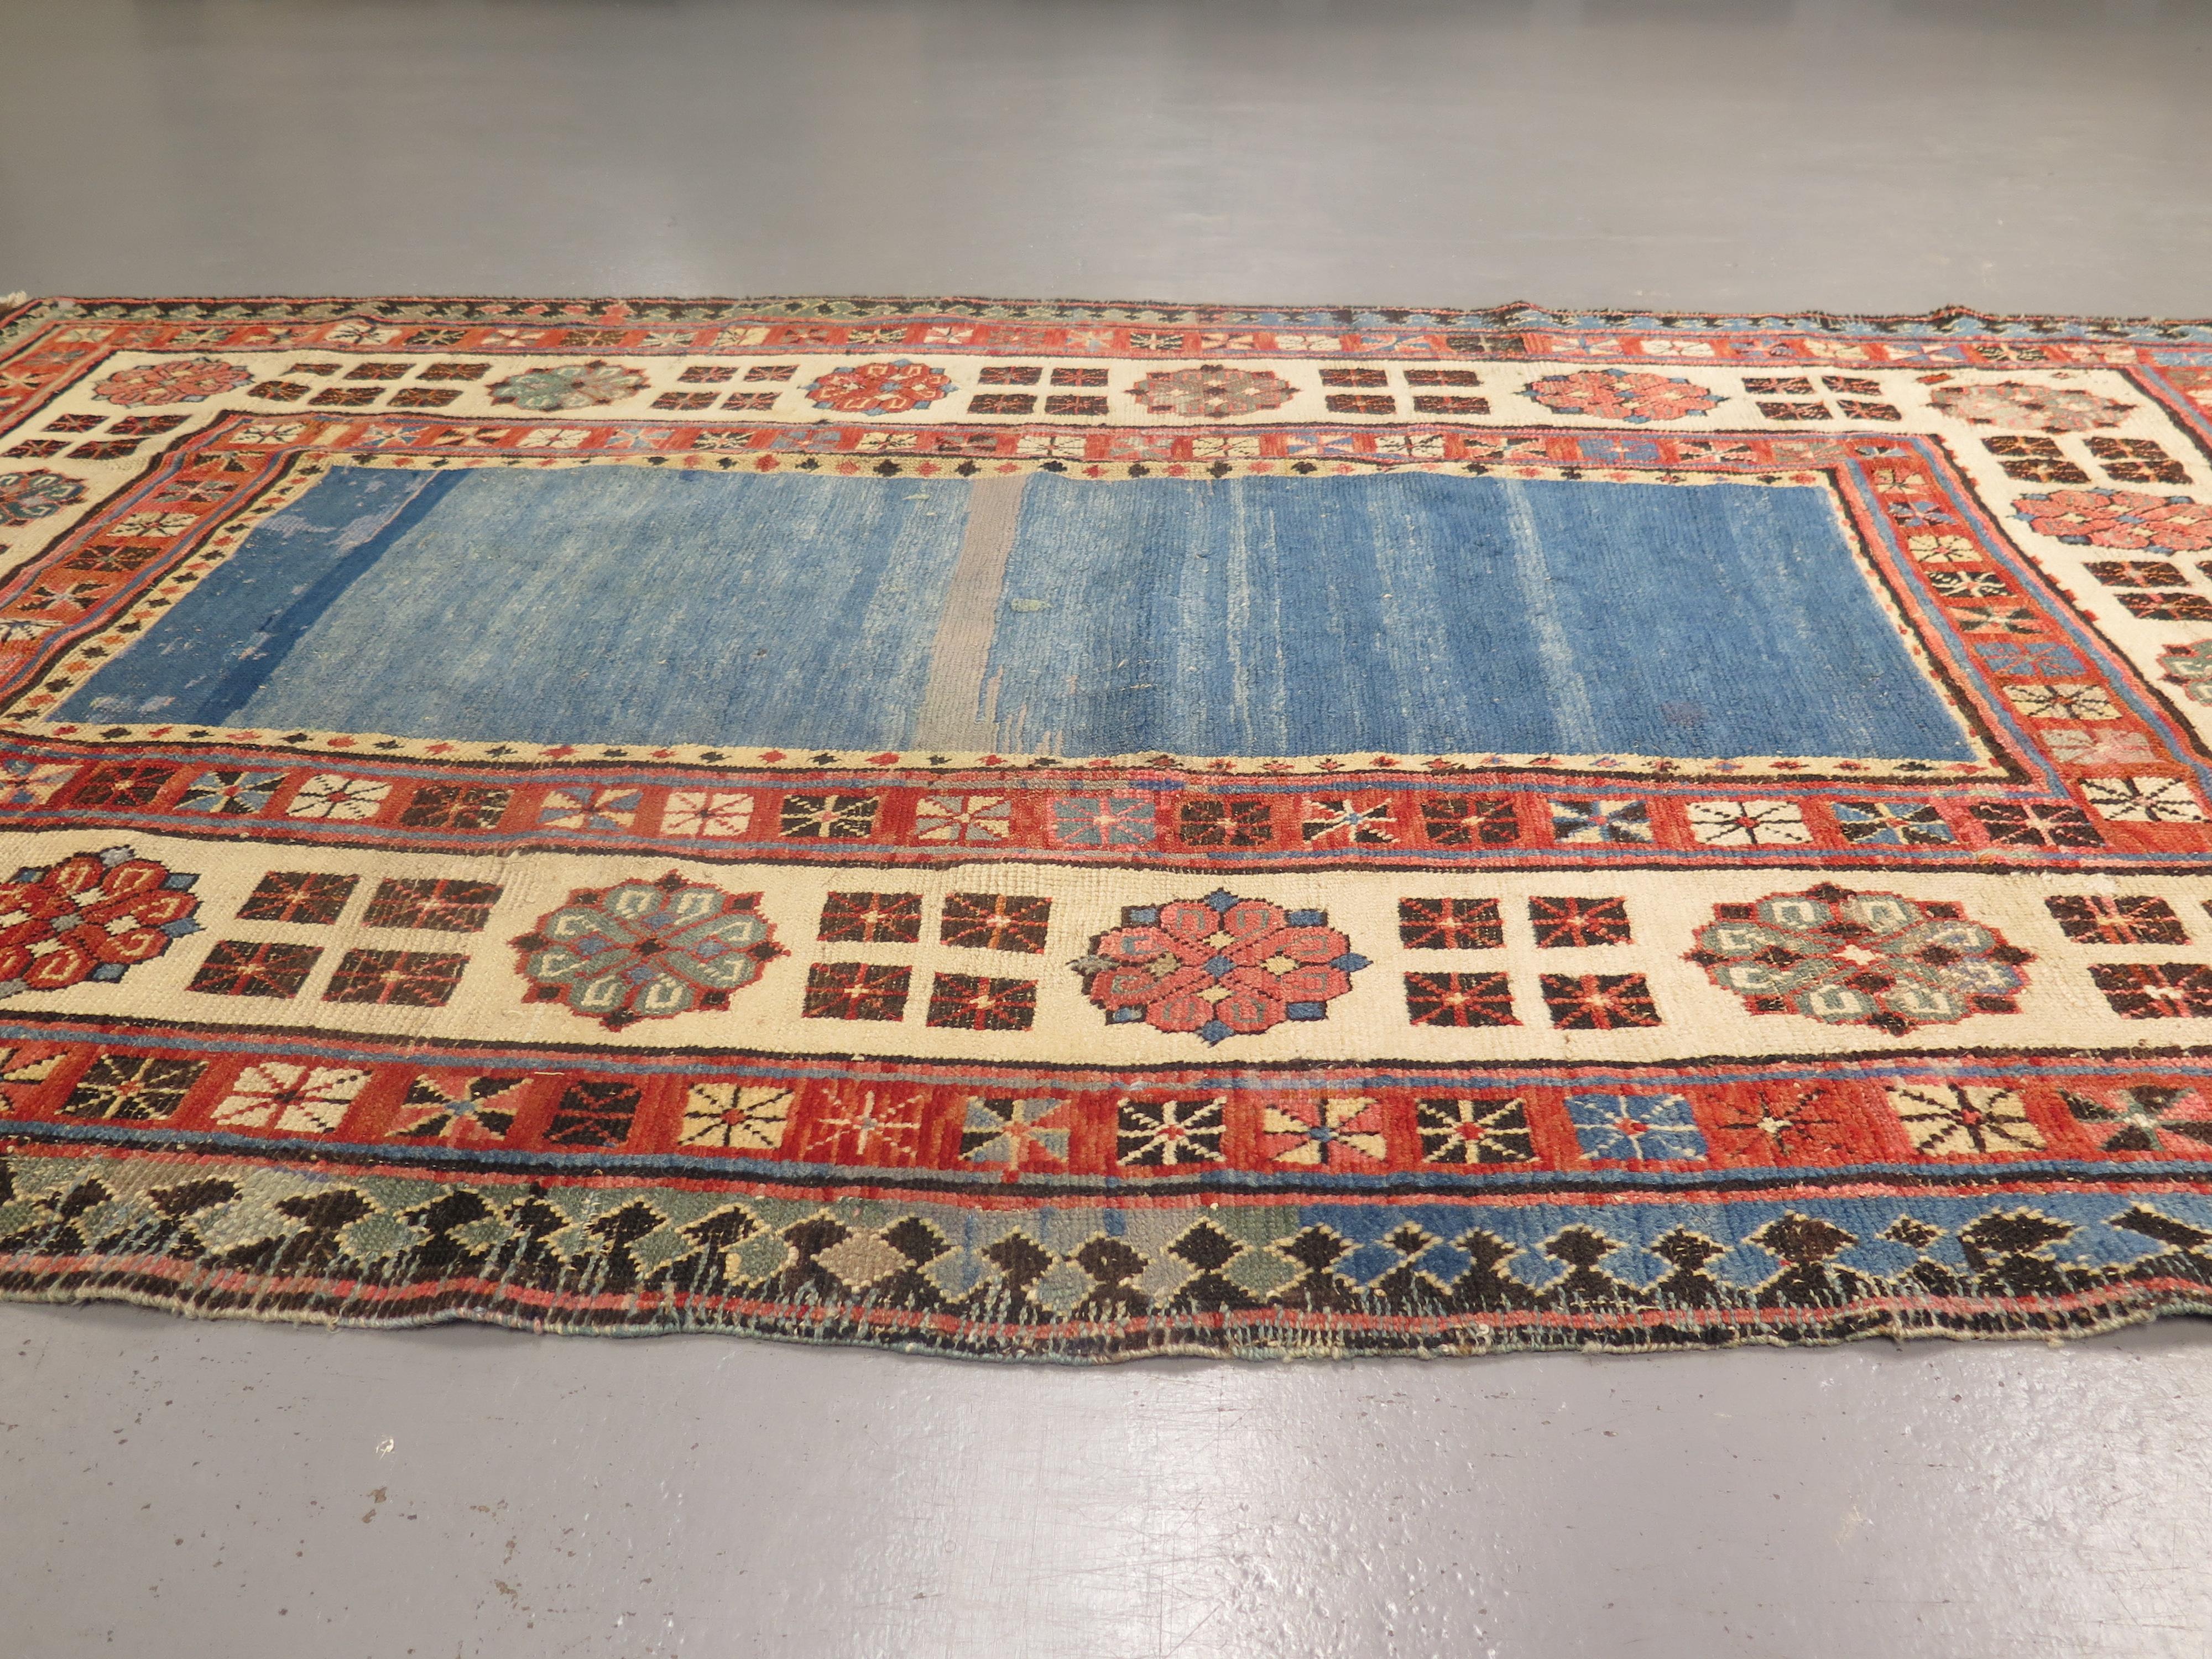 Antike Talish-Teppiche, die aus einer der frühesten bewohnten Regionen des heutigen Aserbaidschan stammen, sind bekannt für ihre einzigartige Zeichnung und hochwertige Wolle sowie dafür, dass sie eher florale als geometrische Motive aufweisen, wie